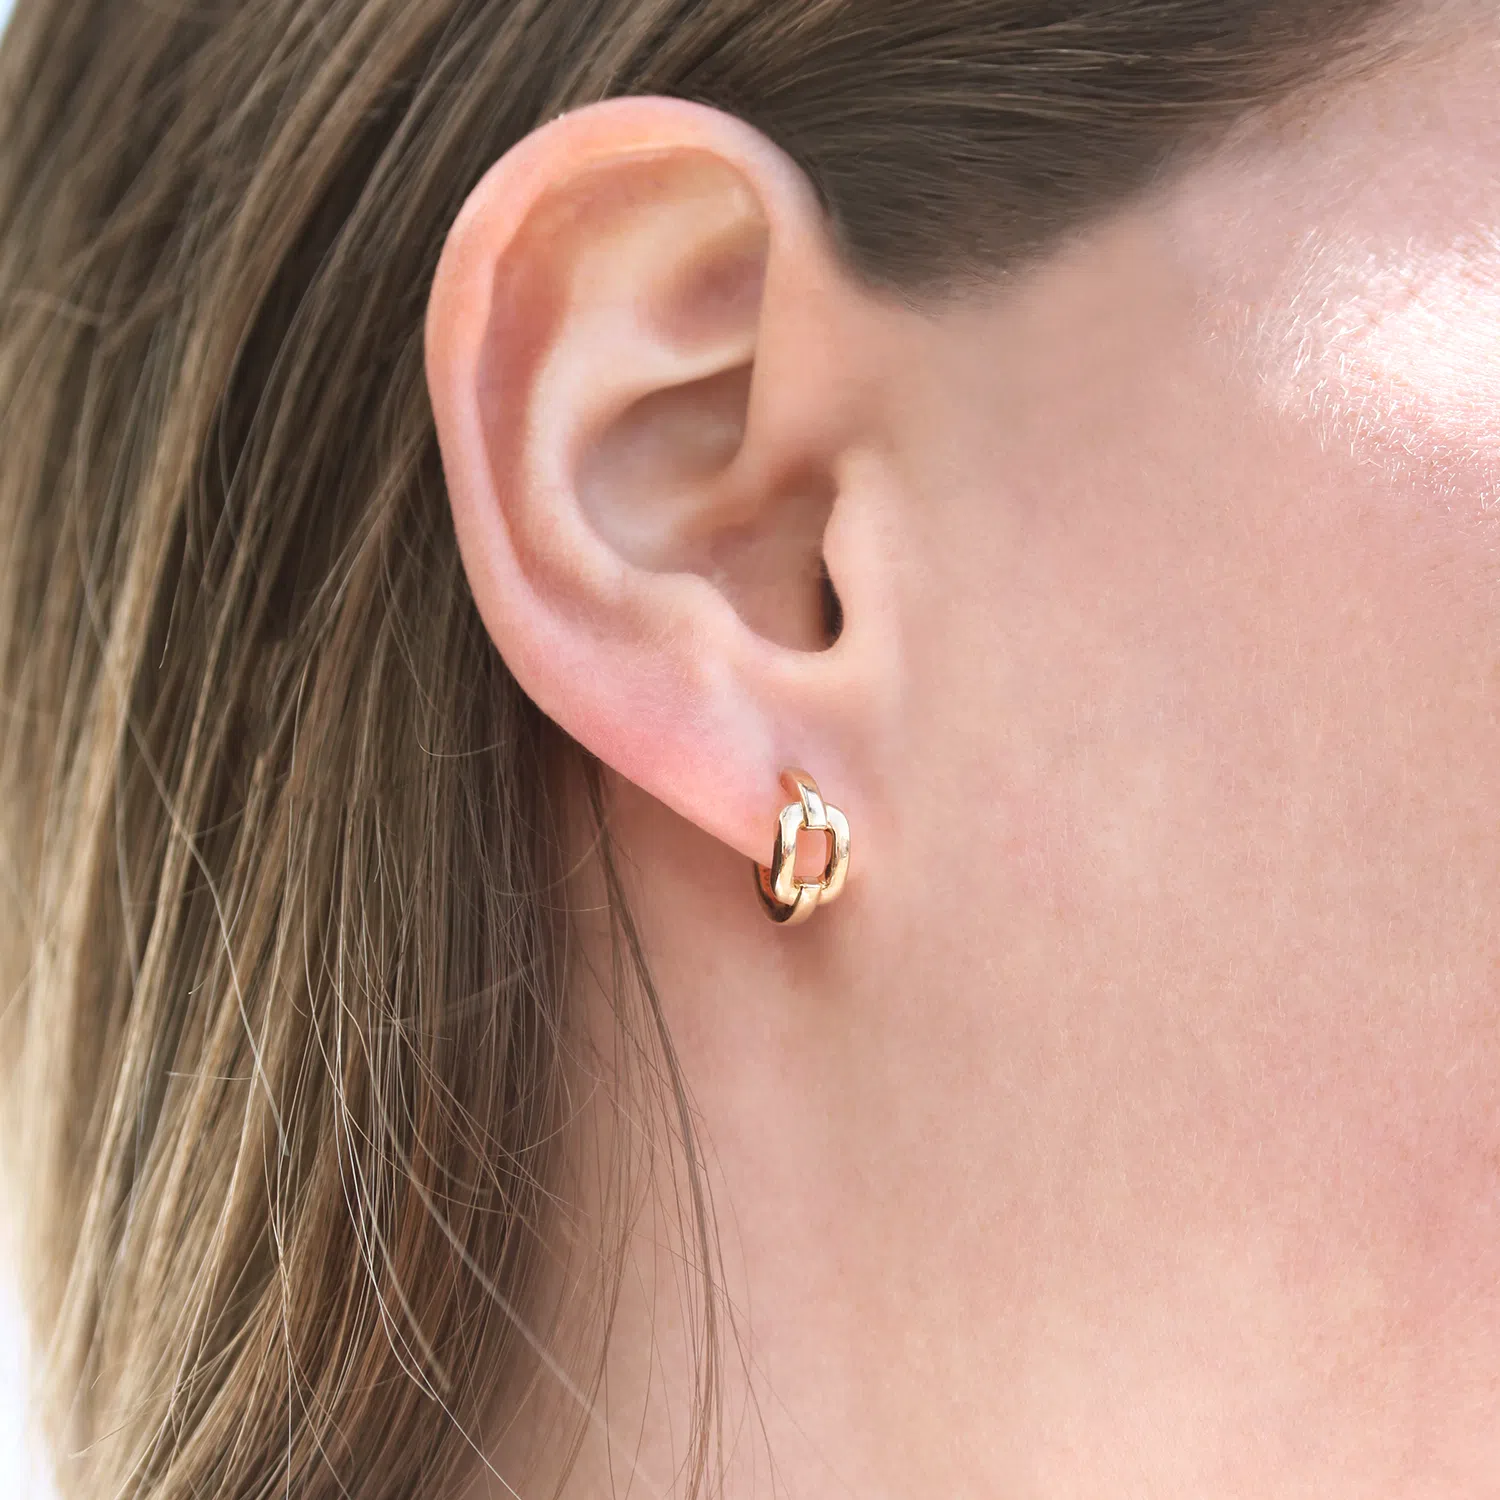 Paire de boucles d'oreilles en forme de maillon en or rose 18 carats porté aux oreilles d'une femme blonde.